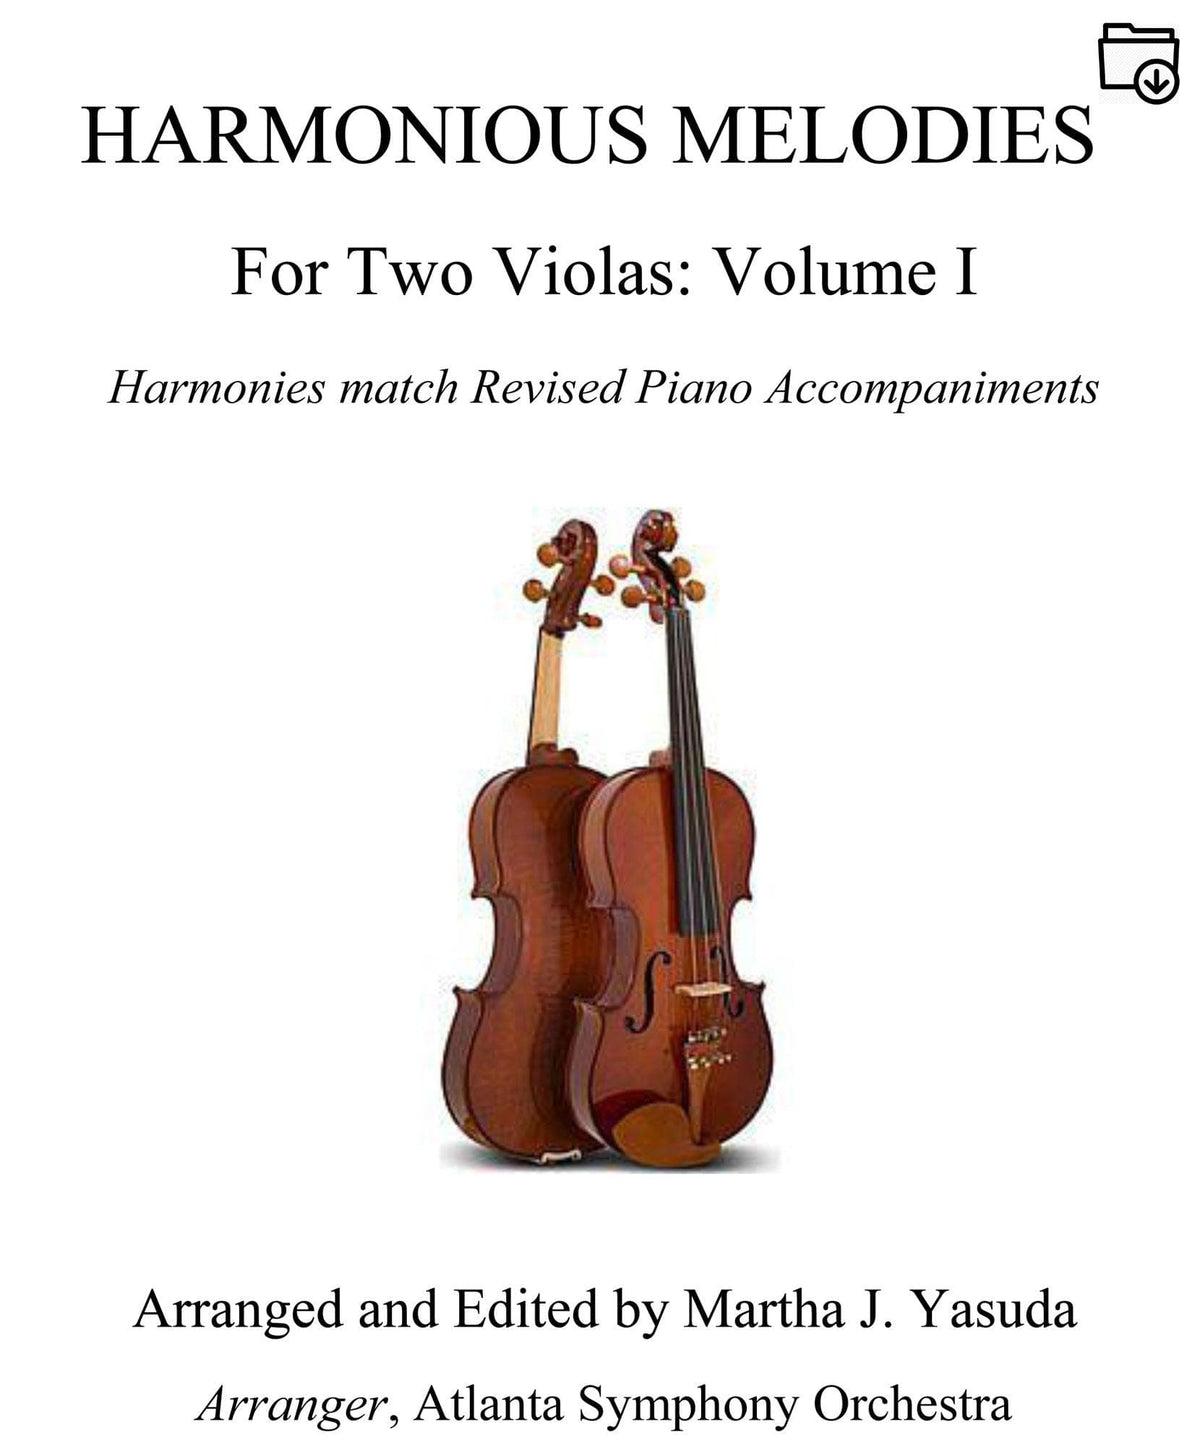 Yasuda, Martha - Harmonious Melodies For Two Violas, Volume I - Digital Download